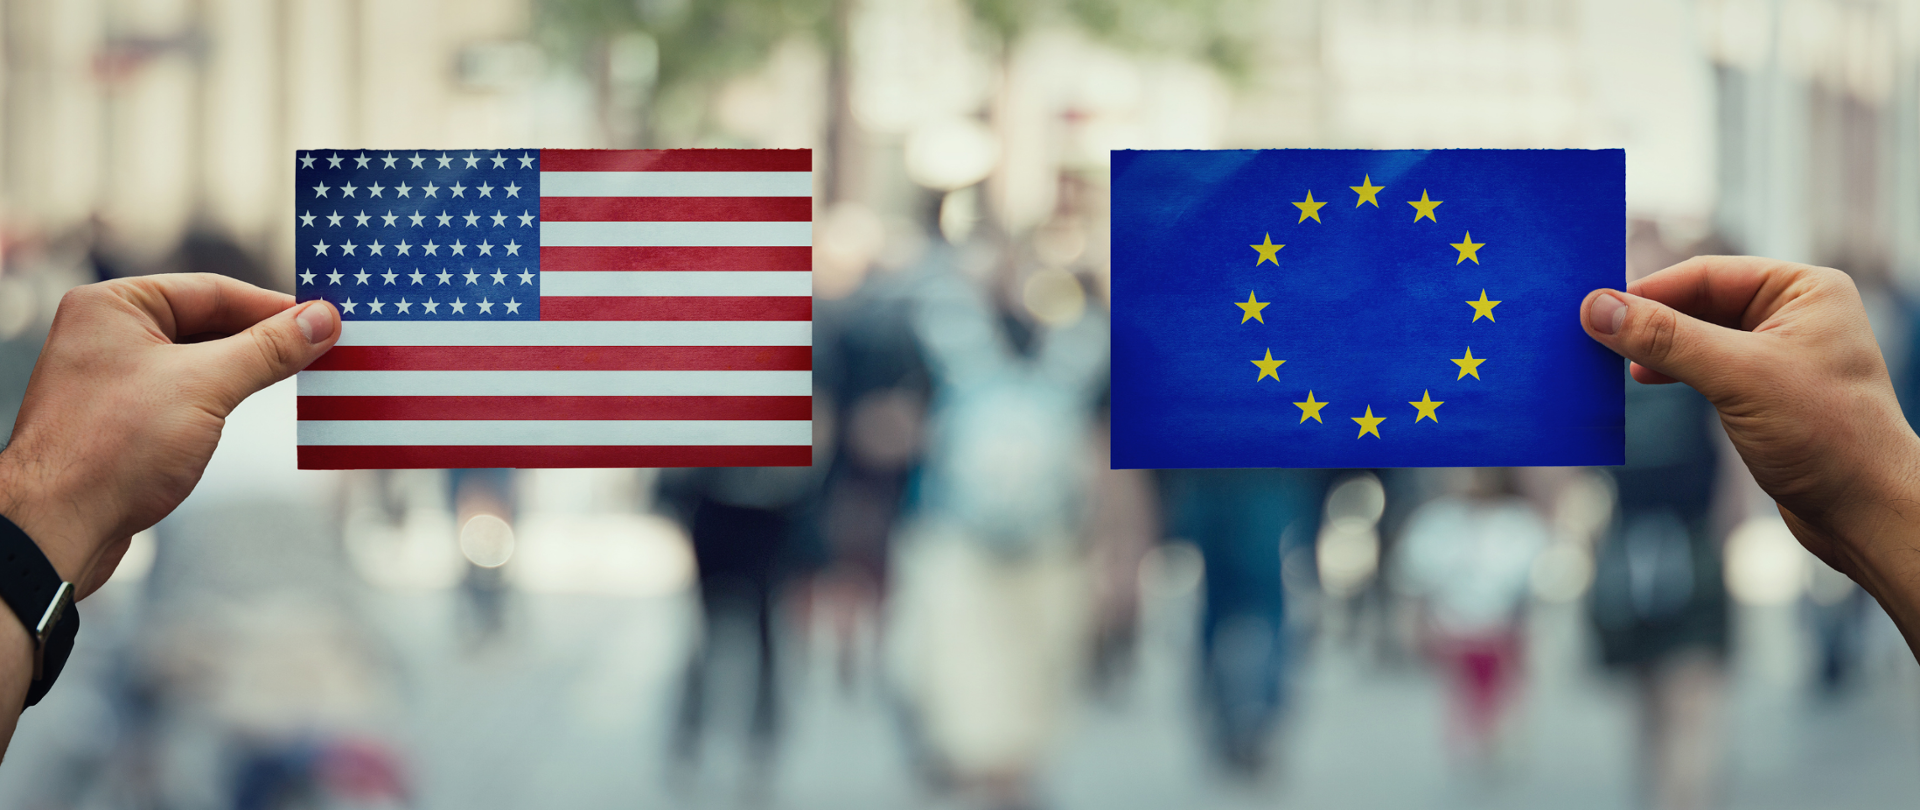 Flagi USA i Unii Europejskiej trzymane w dłoniach. W tle widok ulicy (zamazany).